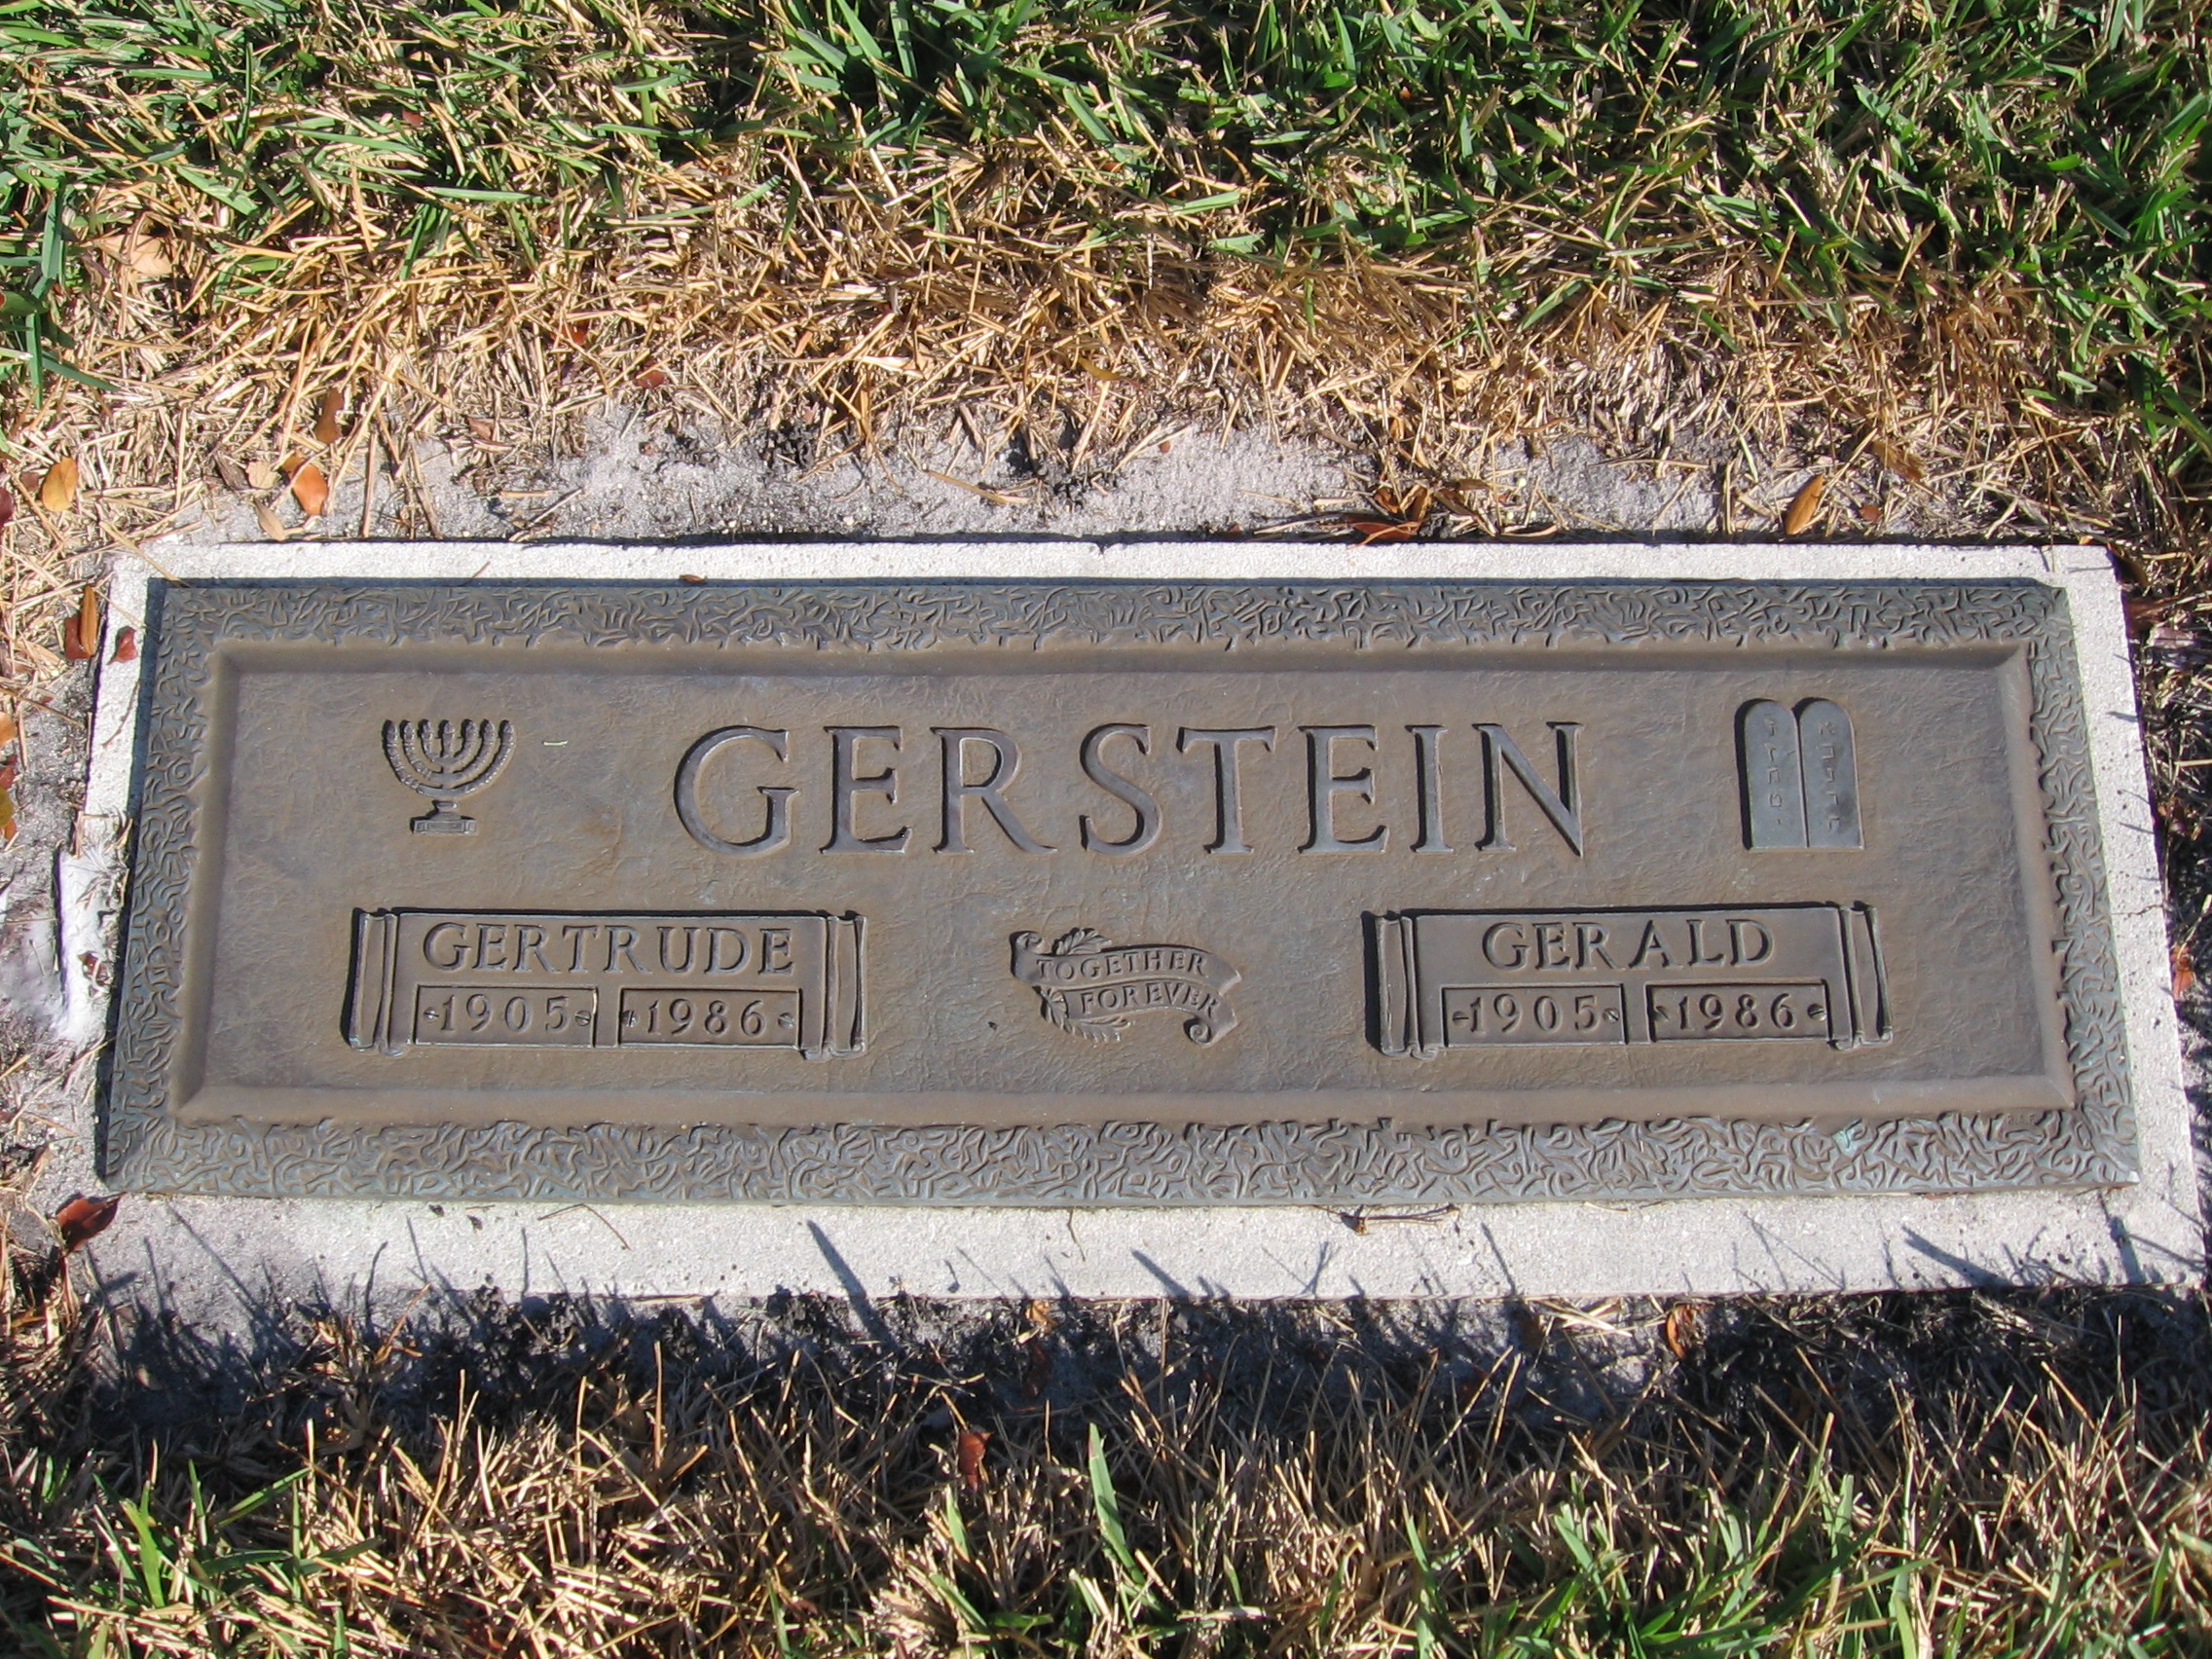 Gerald Gerstein